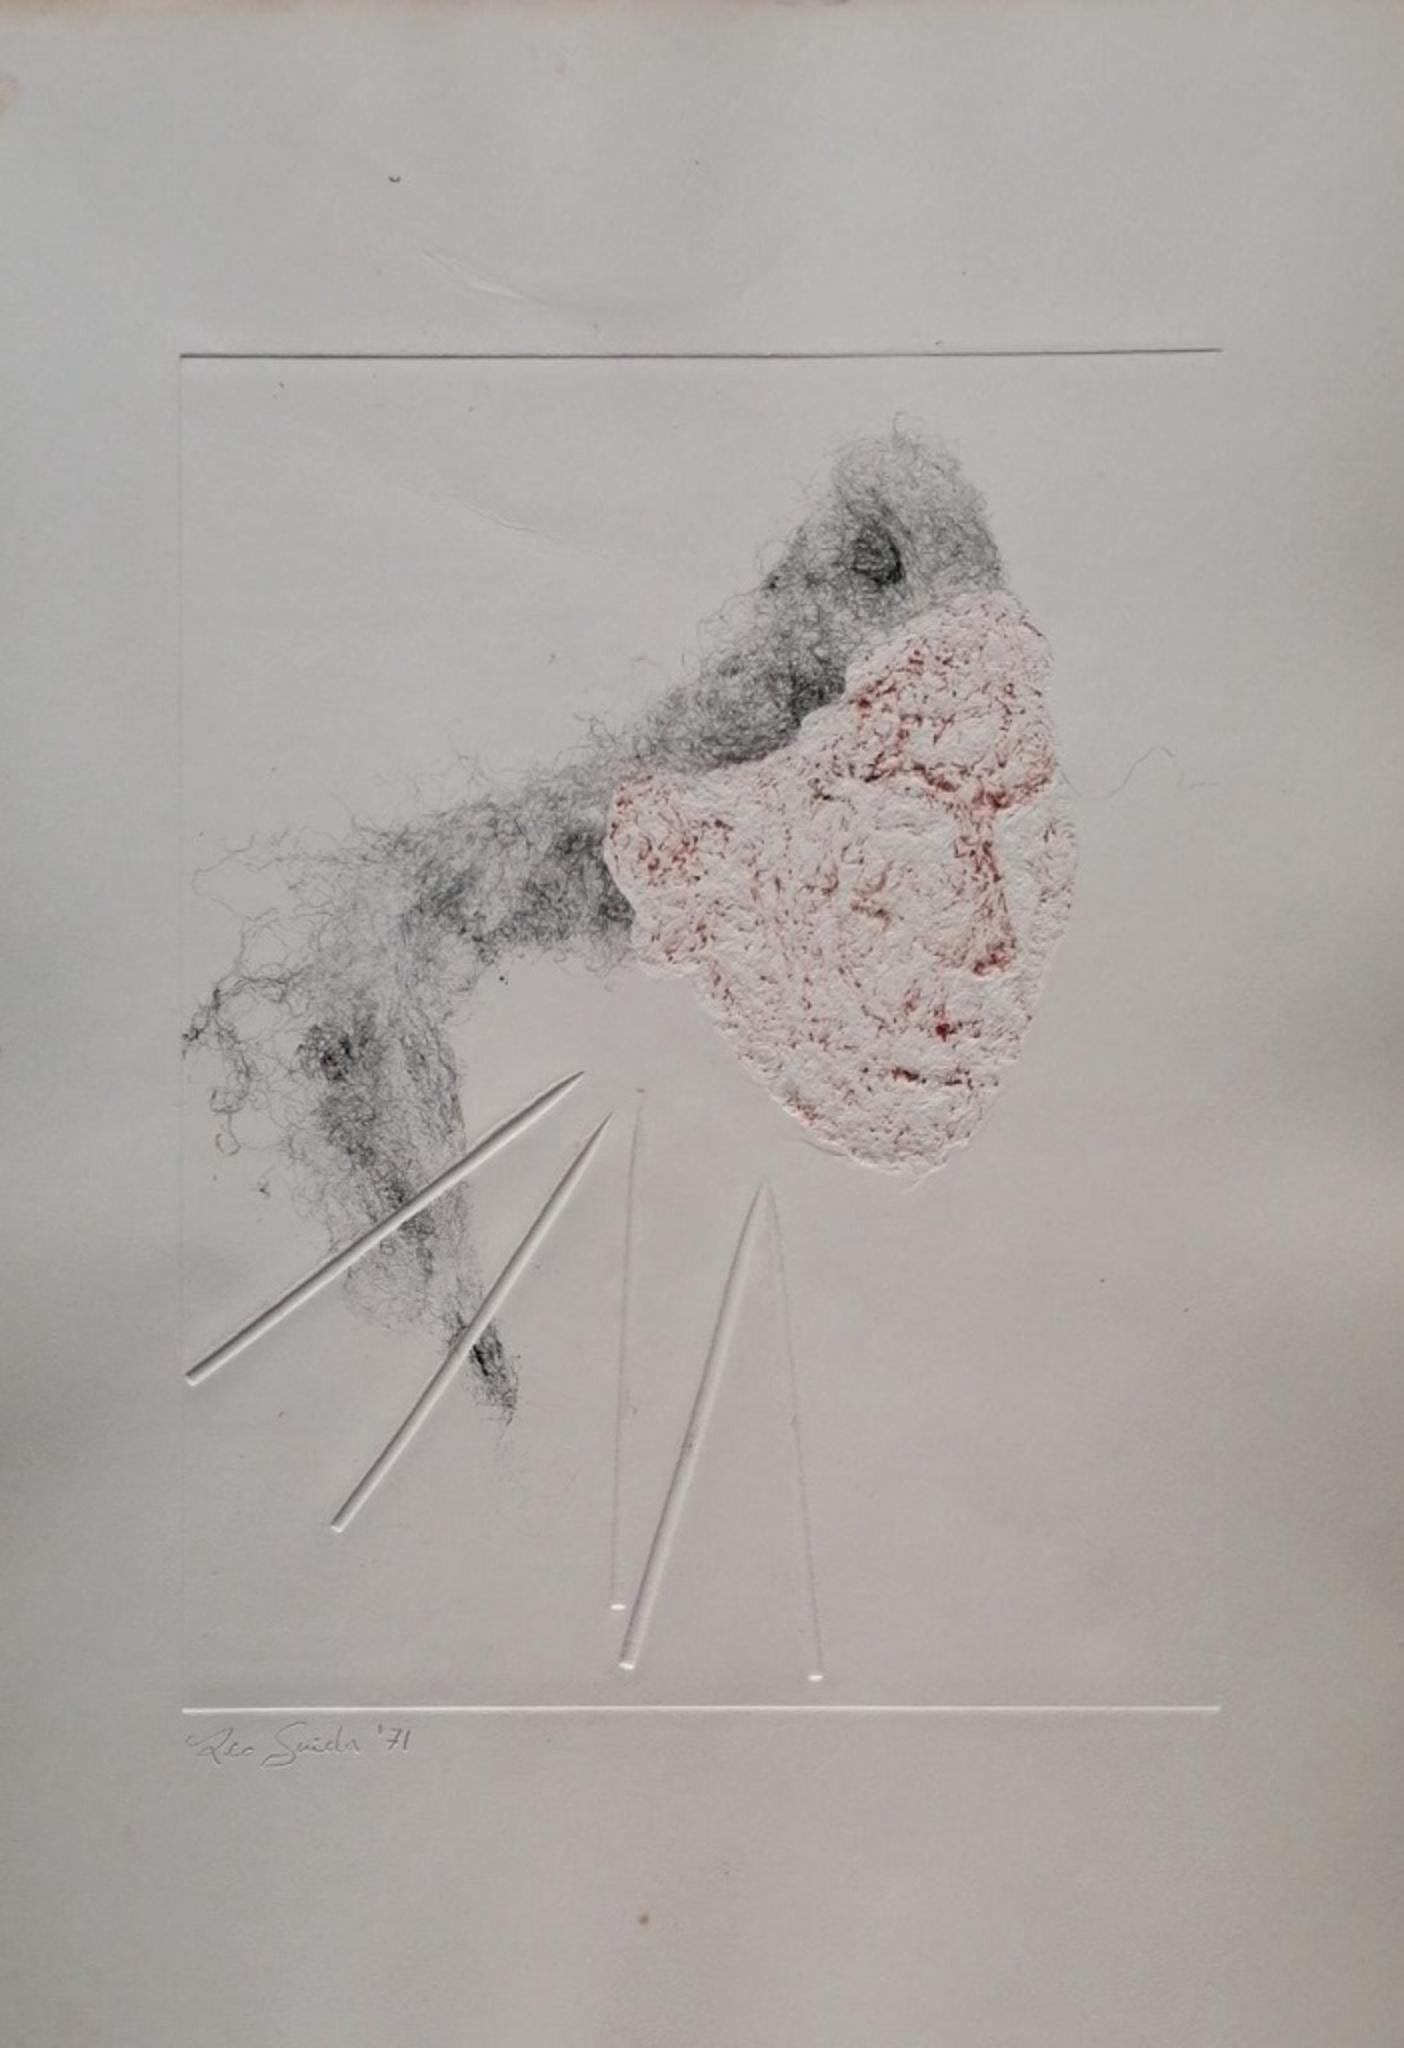 Composition abstraite est une œuvre d'art contemporaine originale réalisée en 1971 en Italie par l'artiste italien Leo Guida.

Gravure originale et média misé sur le papier. Daté et signé à la main par l'artiste au crayon dans le coin inférieur